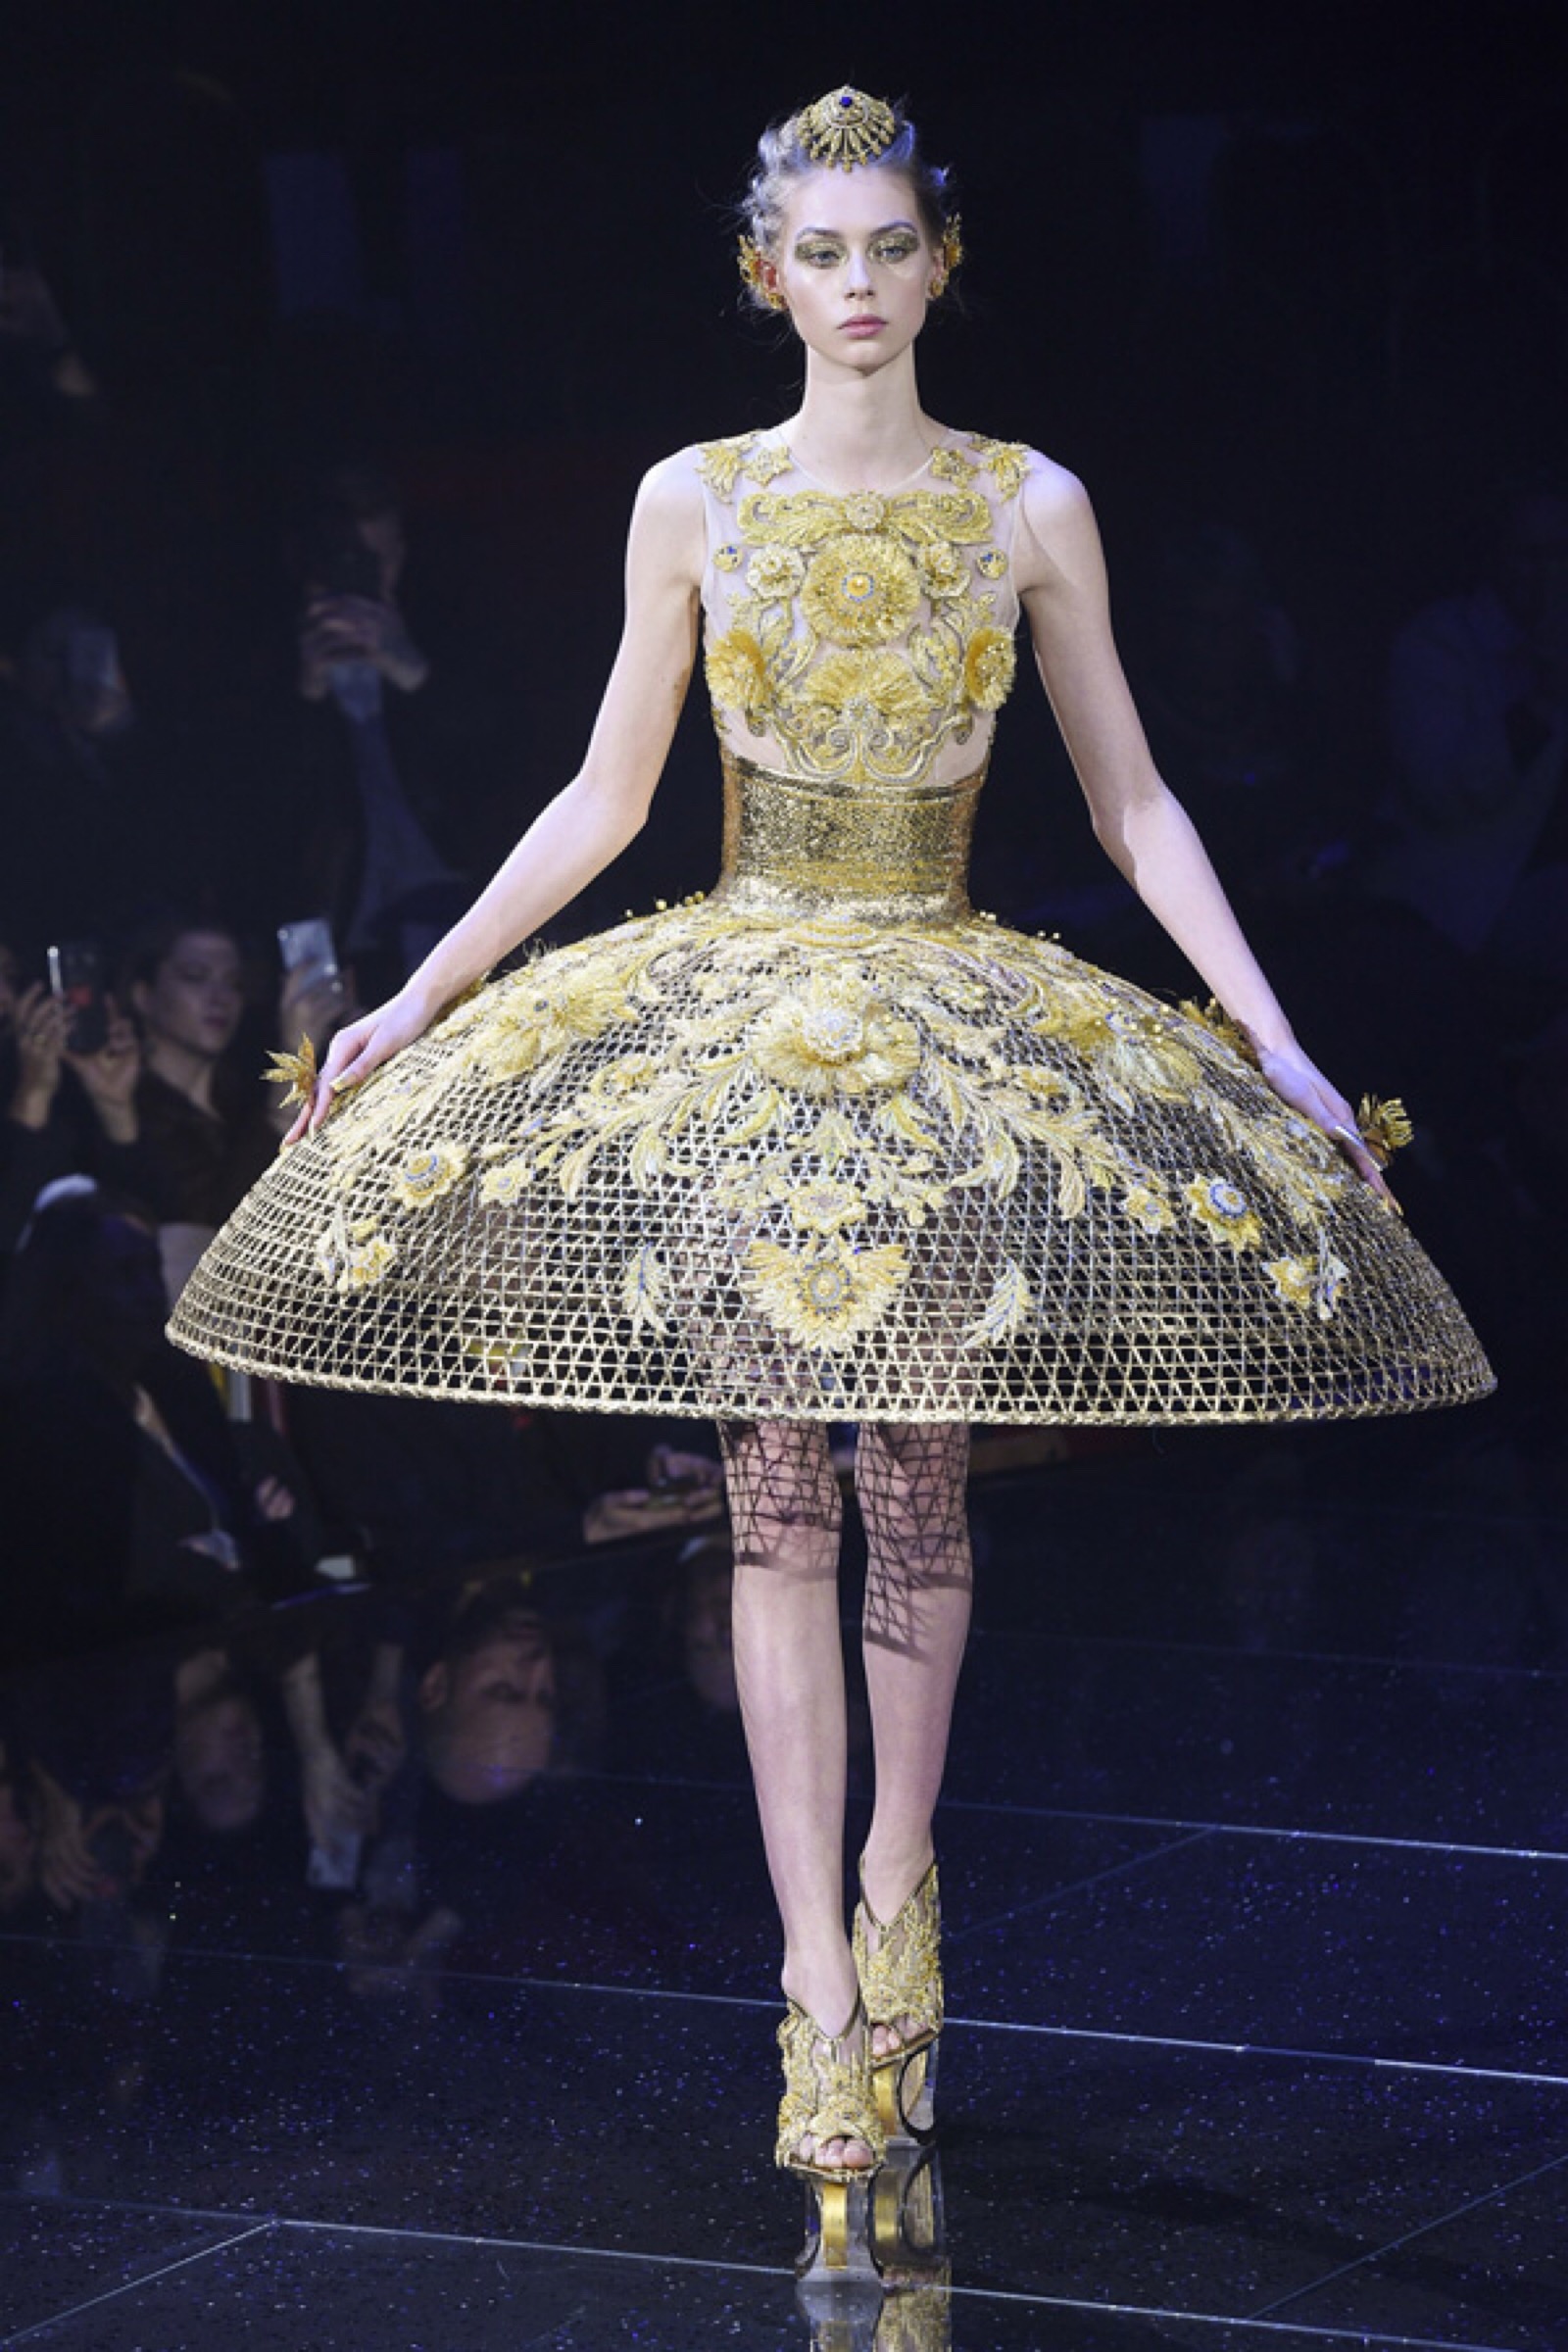 中国著名设计师品牌 guo pei(郭培)于巴黎高定时装周发布2018春夏高级